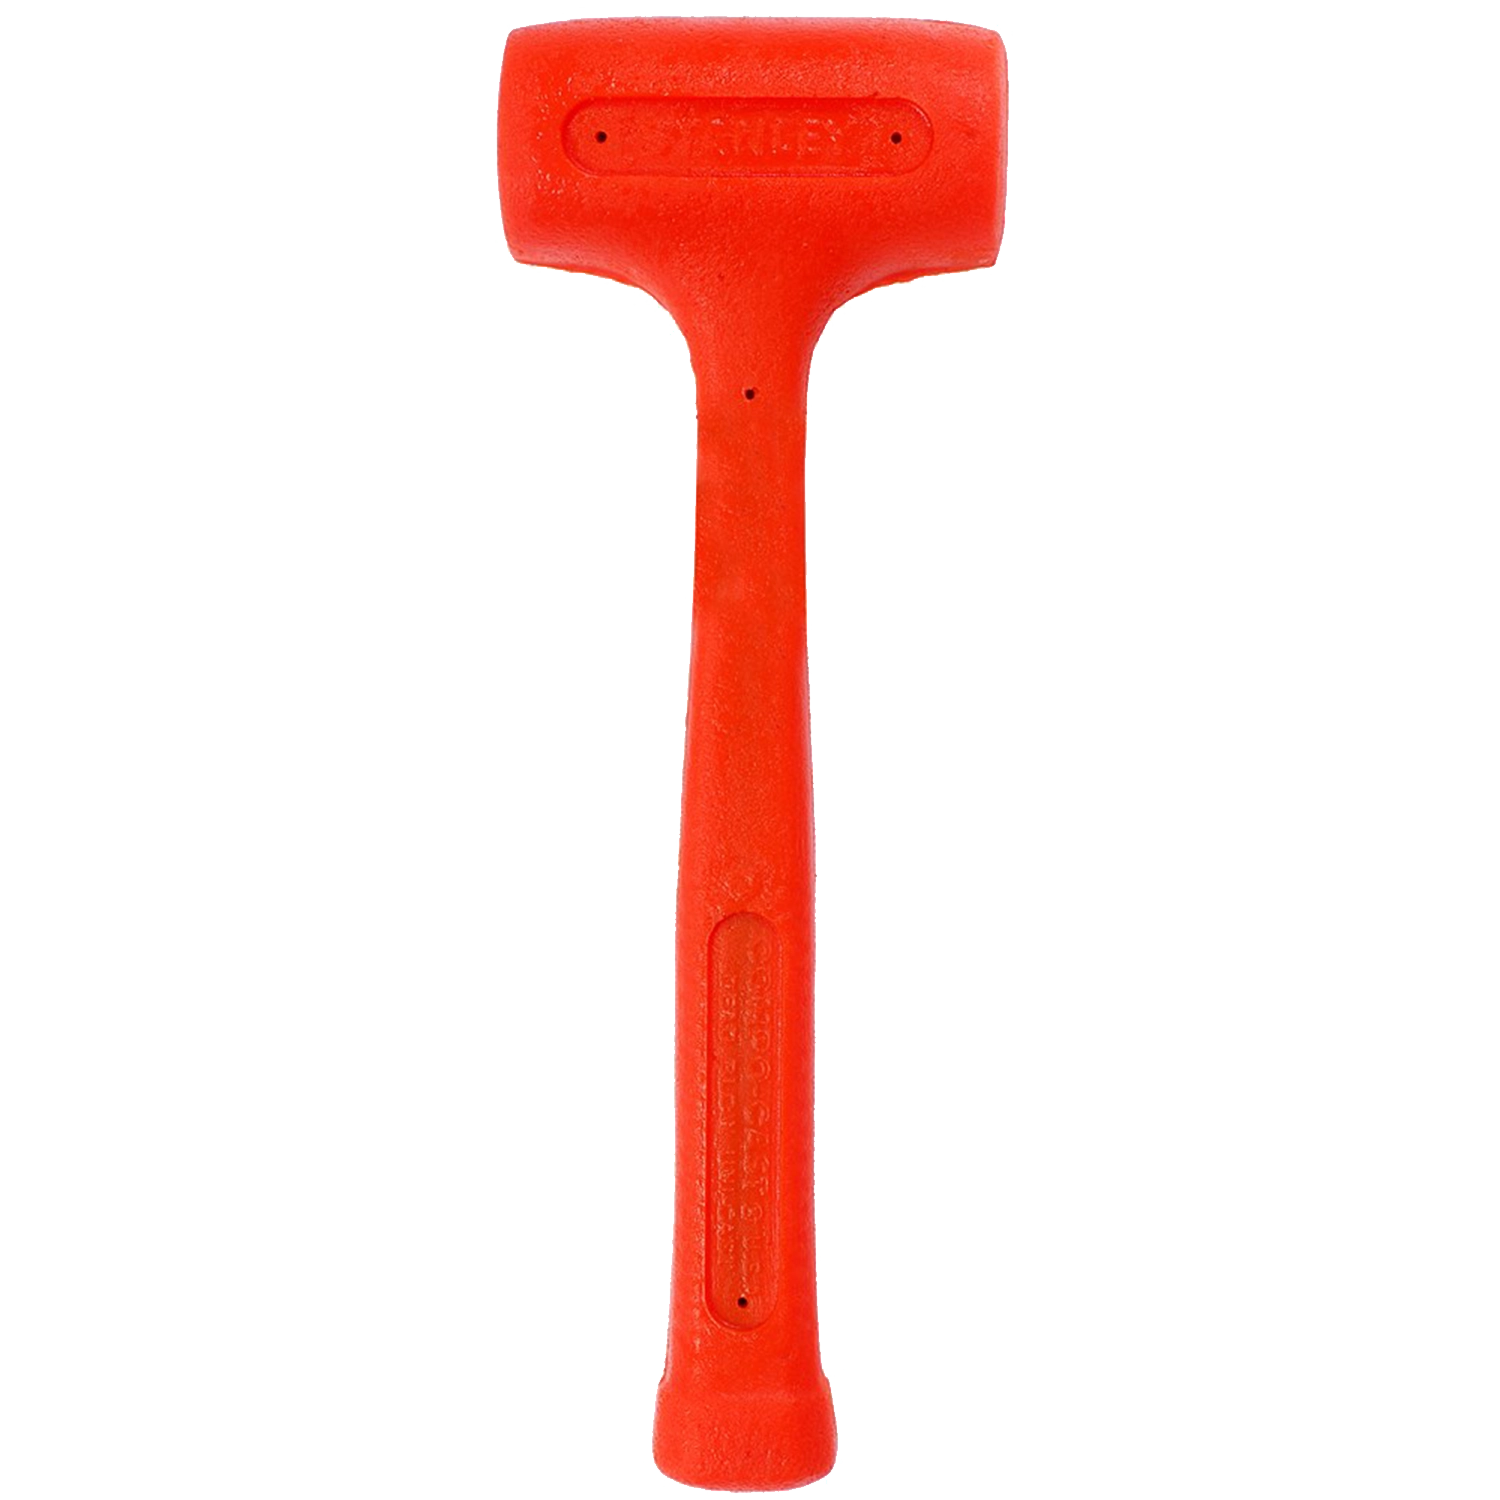 Rode Stanley Compo Cast hamer. Met waarschuwingslabel in papier er aan geplakt.